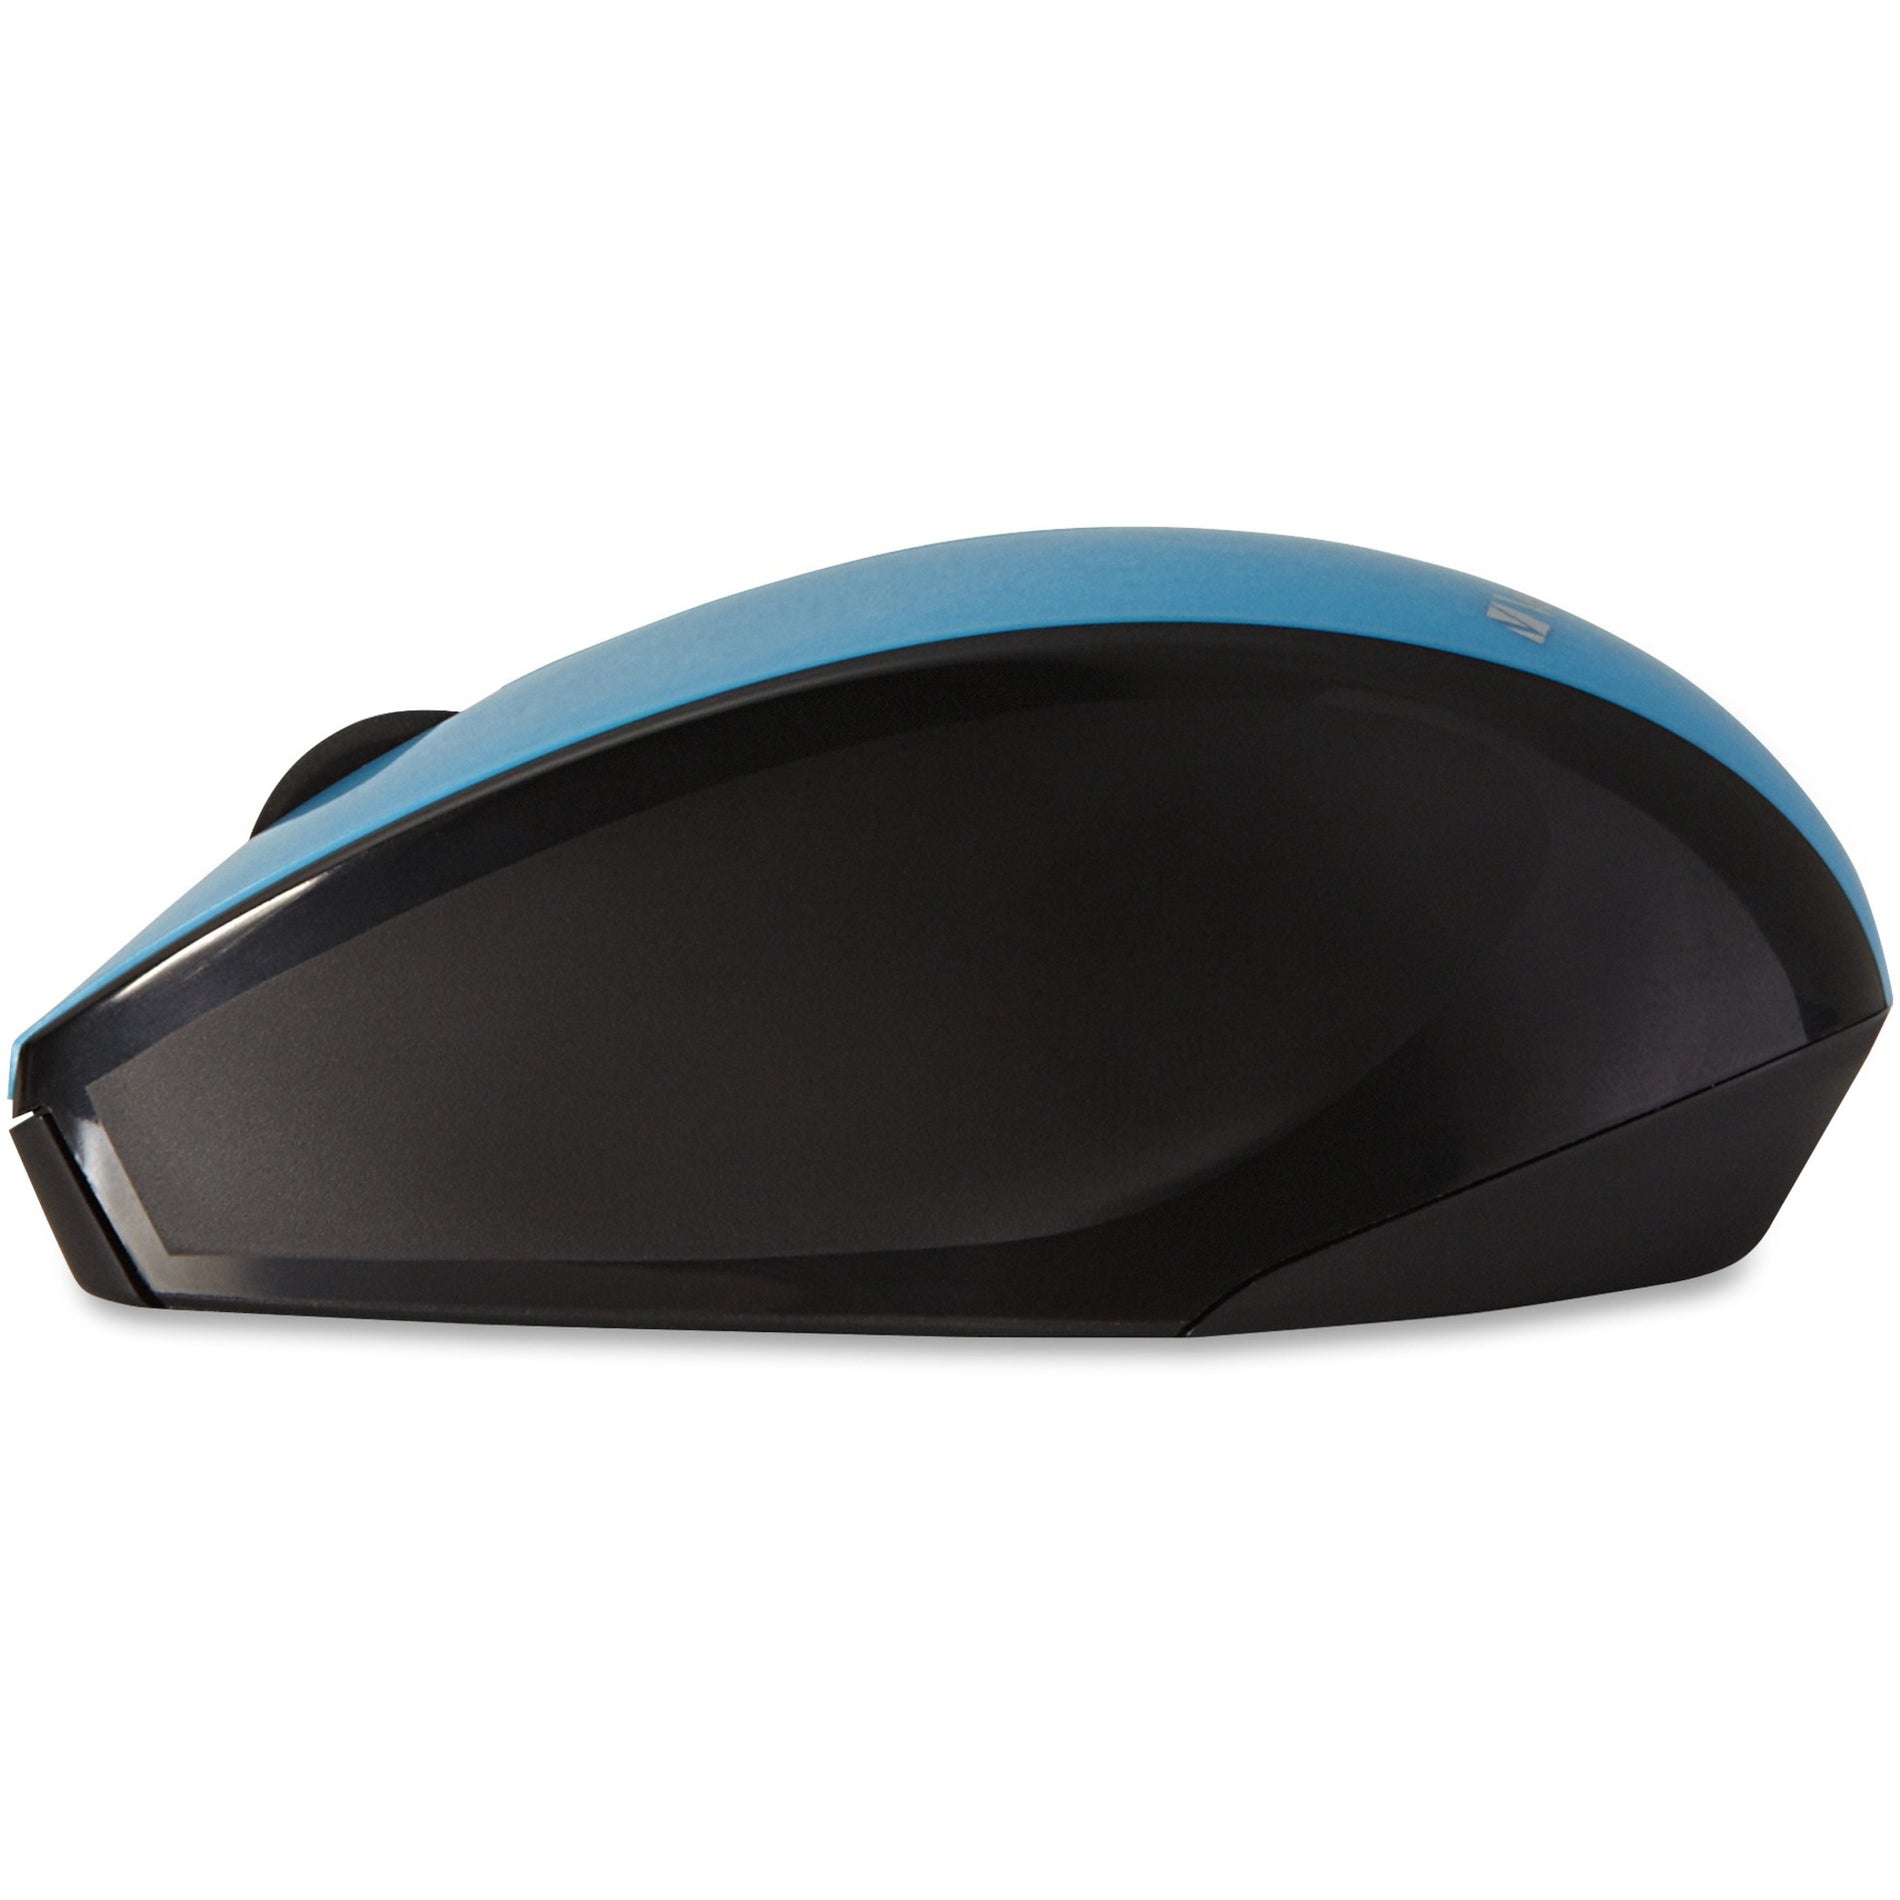 Verbatim 97993 Wireless Multi-trac LED Optical Mouse Blau - Zuverlässige und ergonomische Computermaus mit blauer LED-Technologie